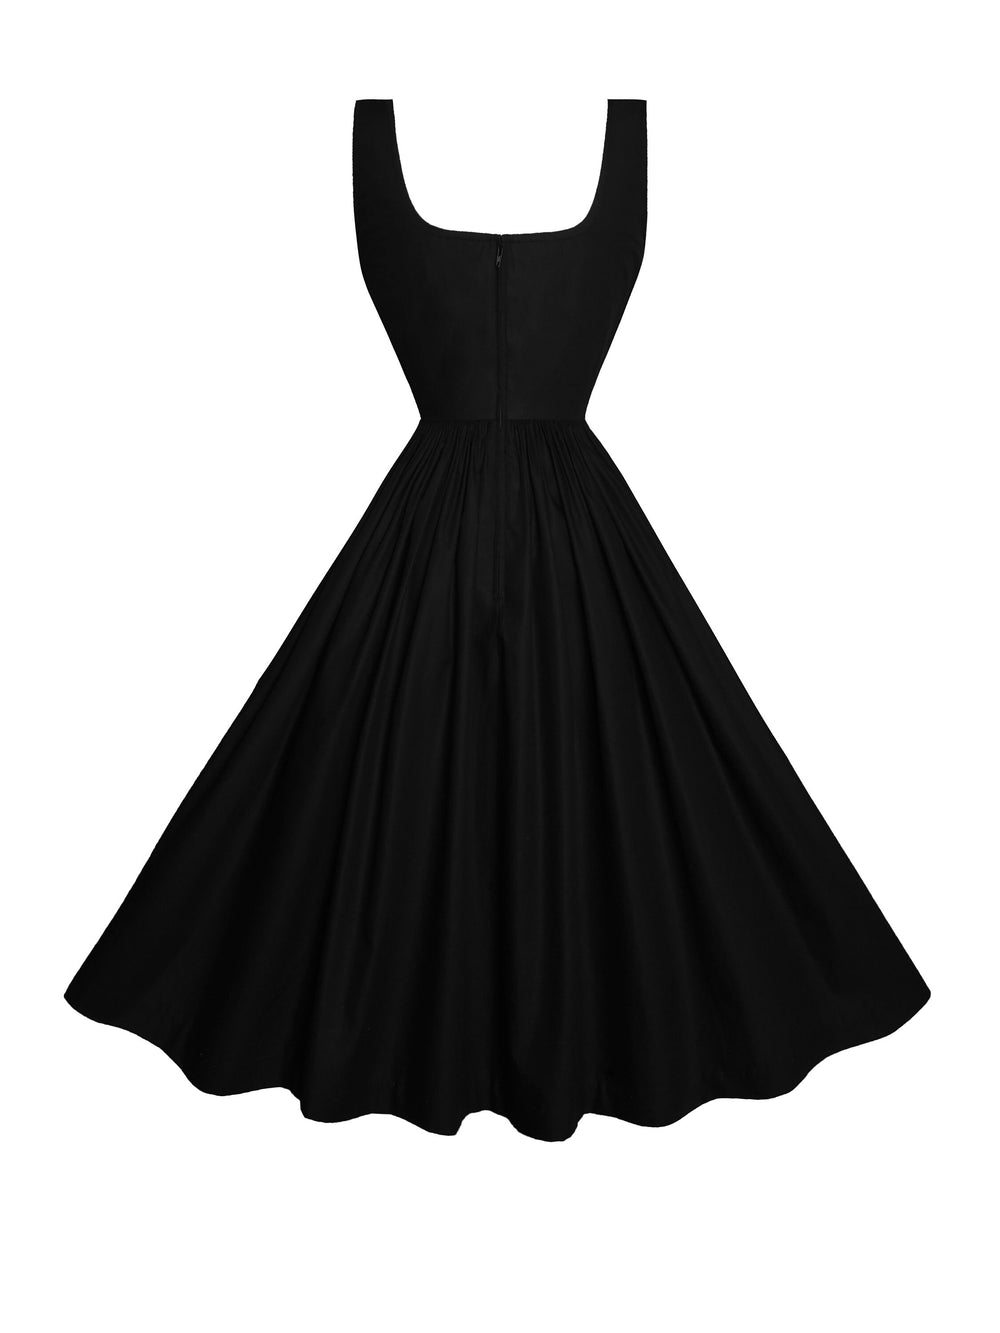 MTO - Michelle Dress in Raven Black Cotton